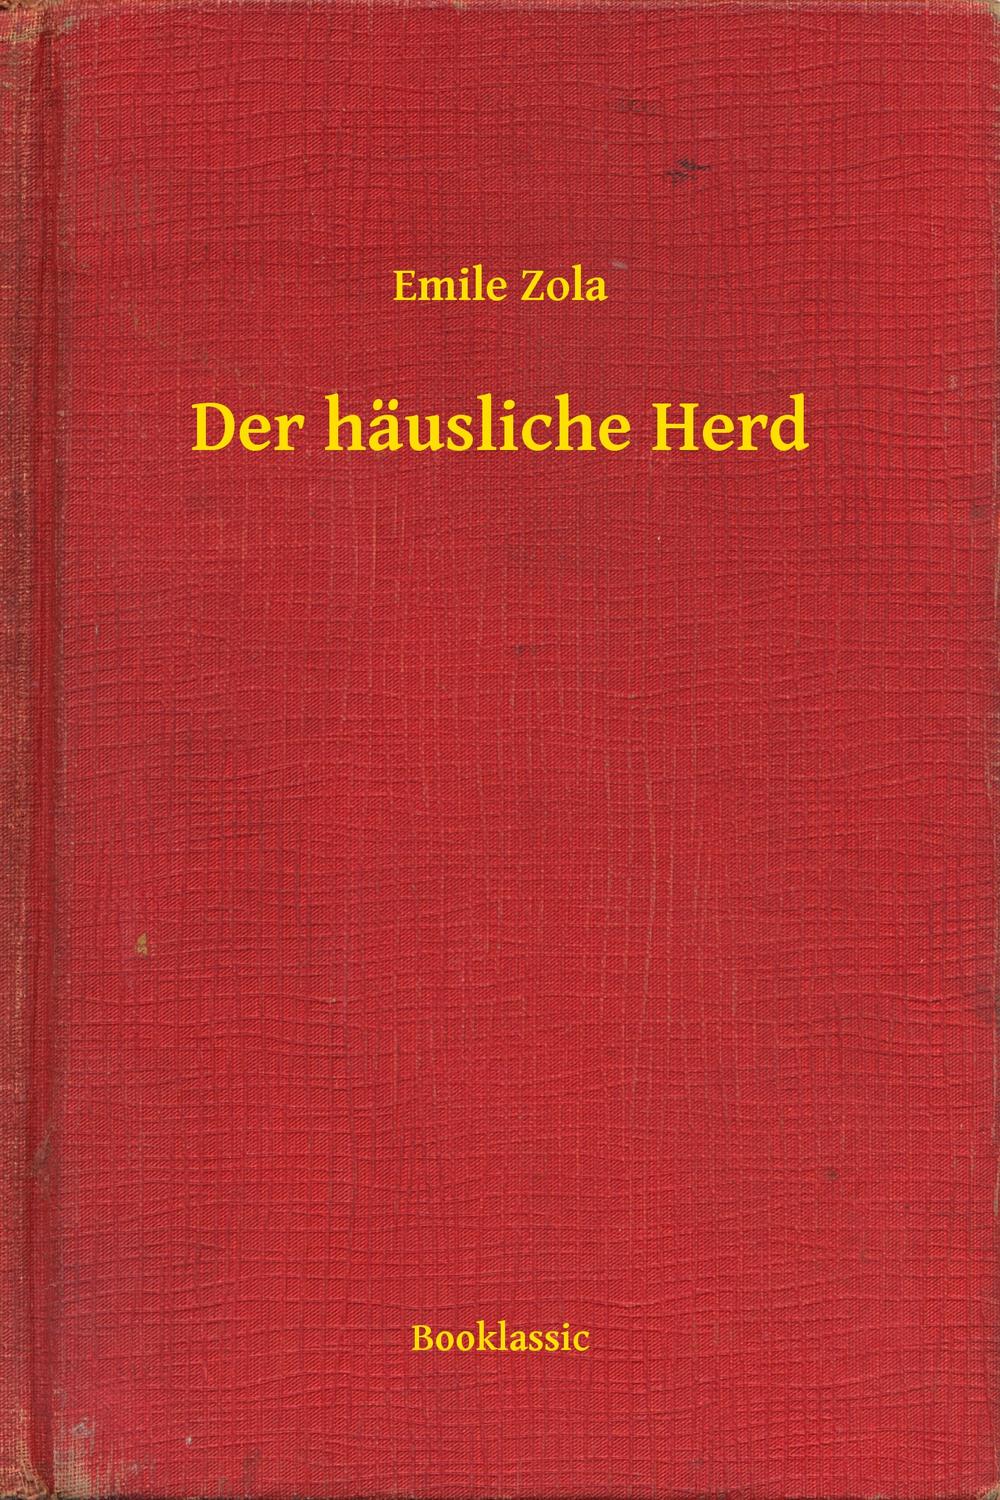 Der häusliche Herd - Emile Zola